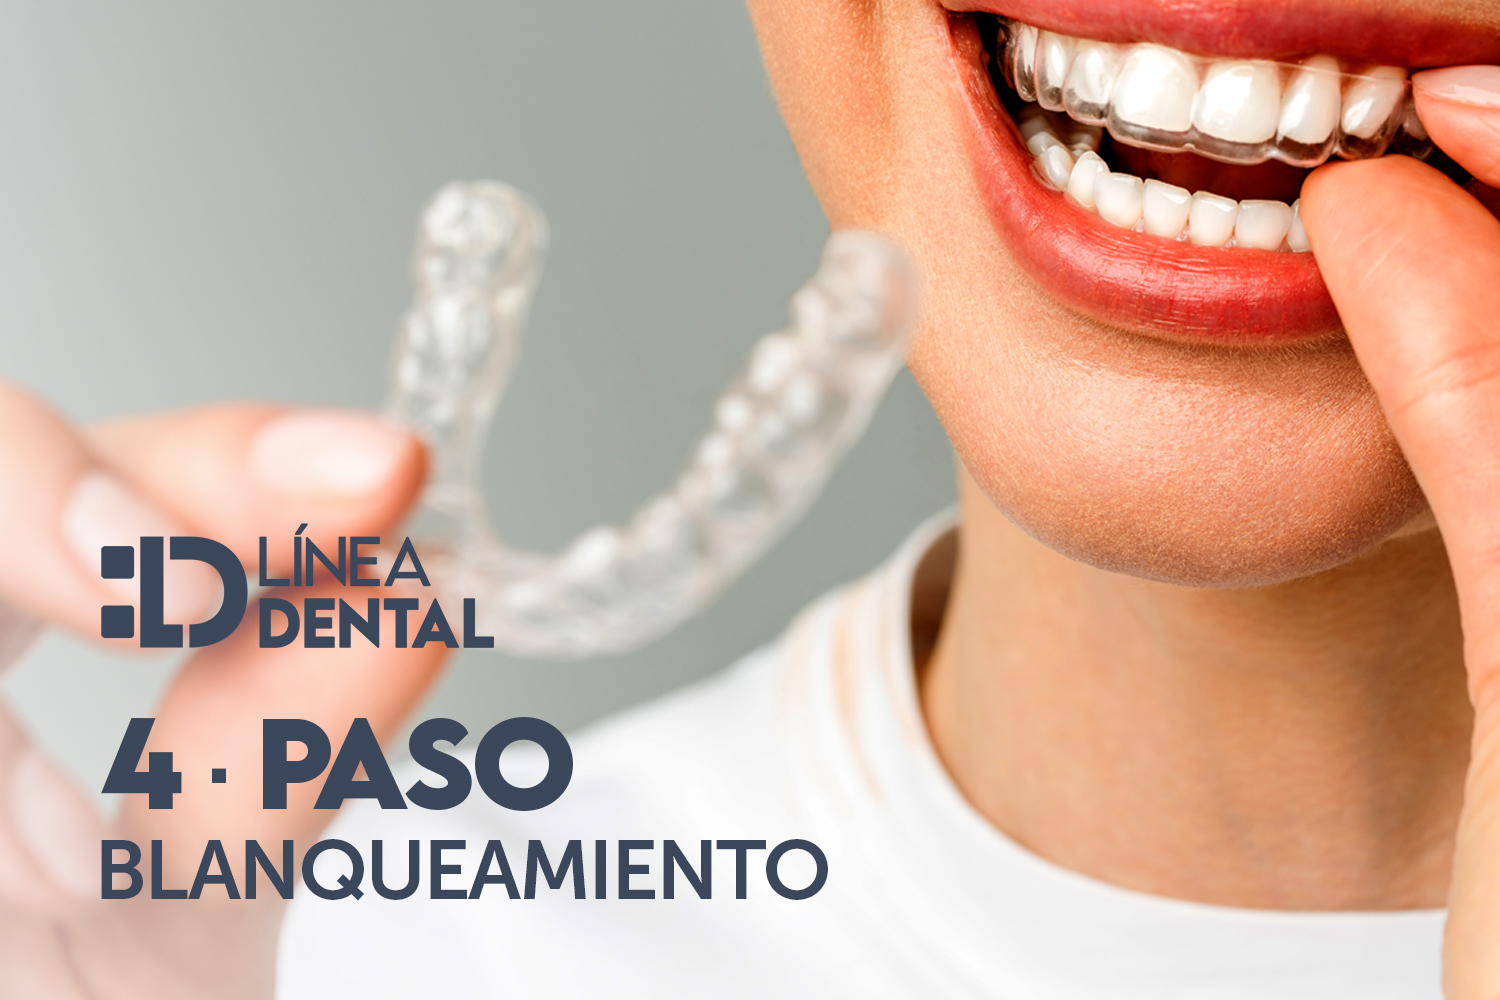 Blanqueamiento dental en Línea Dental Ciudad Real y Miguelturra